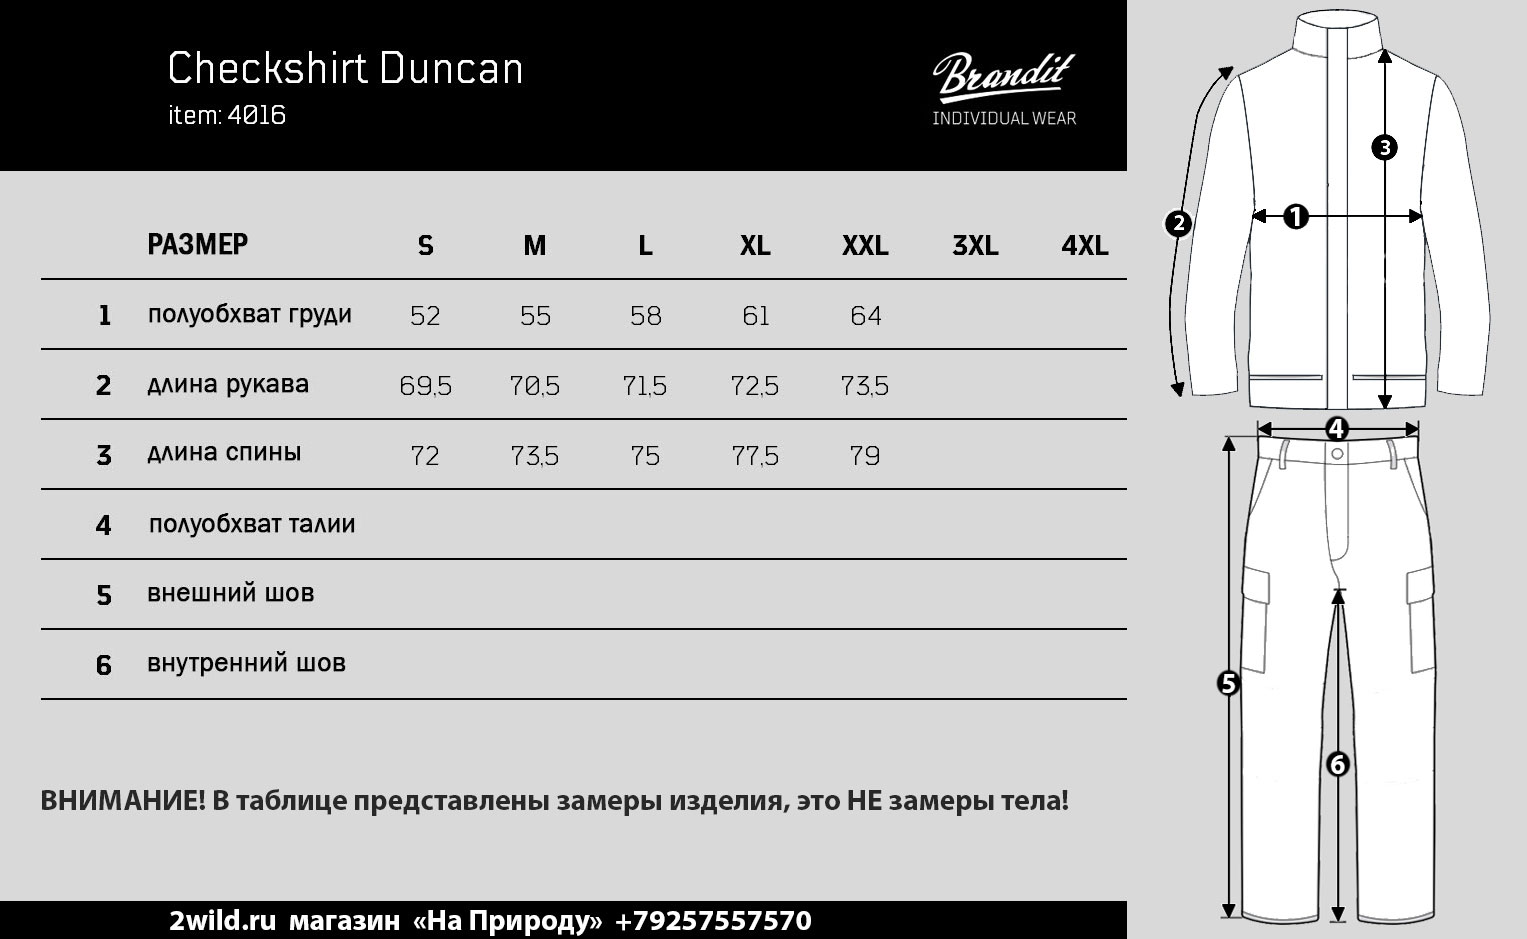 Рубашка Brandit Checkshirt Duncan размеры